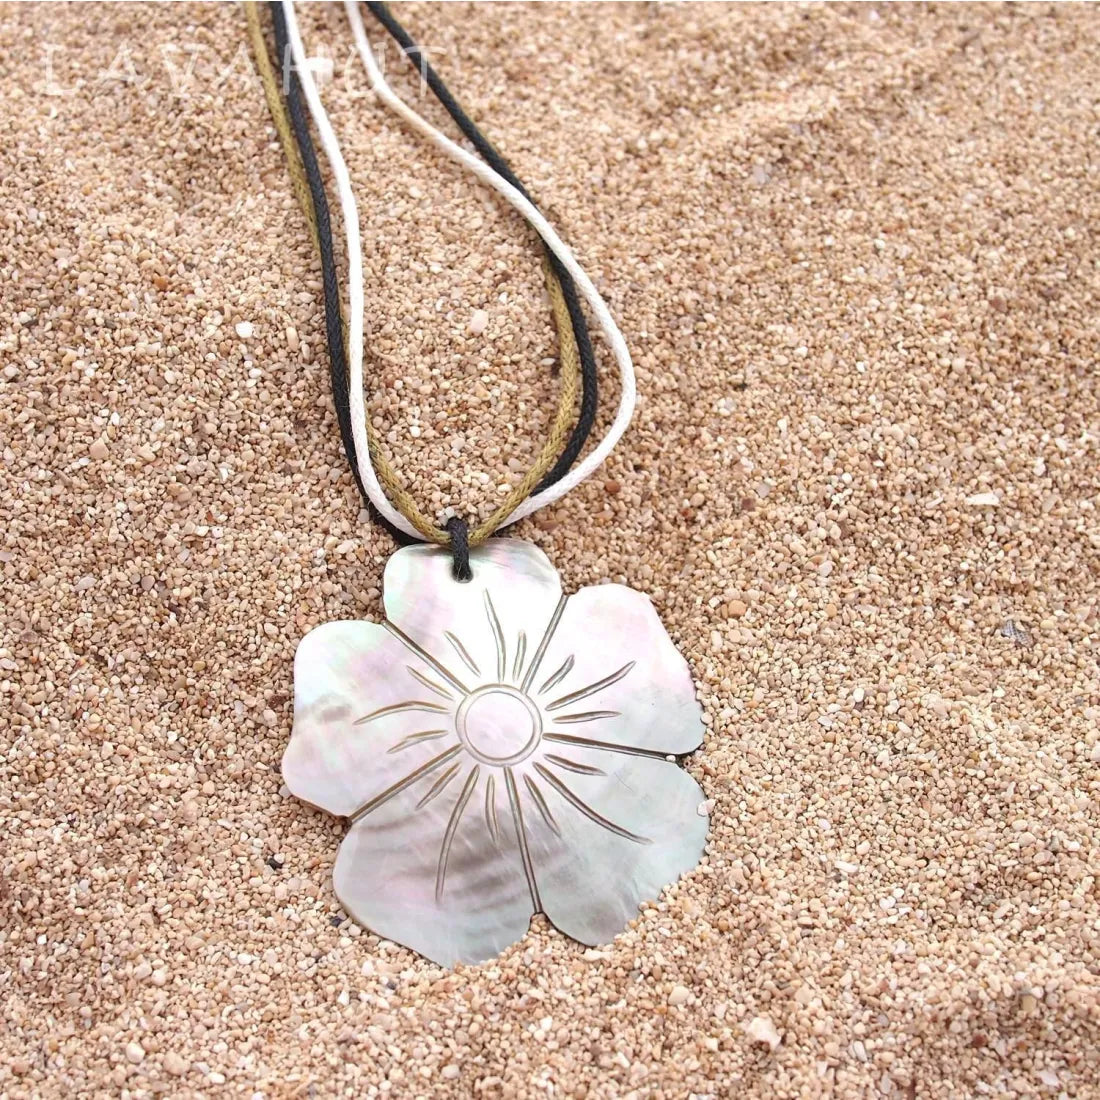 Plumeria Mother Of Pearl Hawaiian Necklace - Made In Hawaii